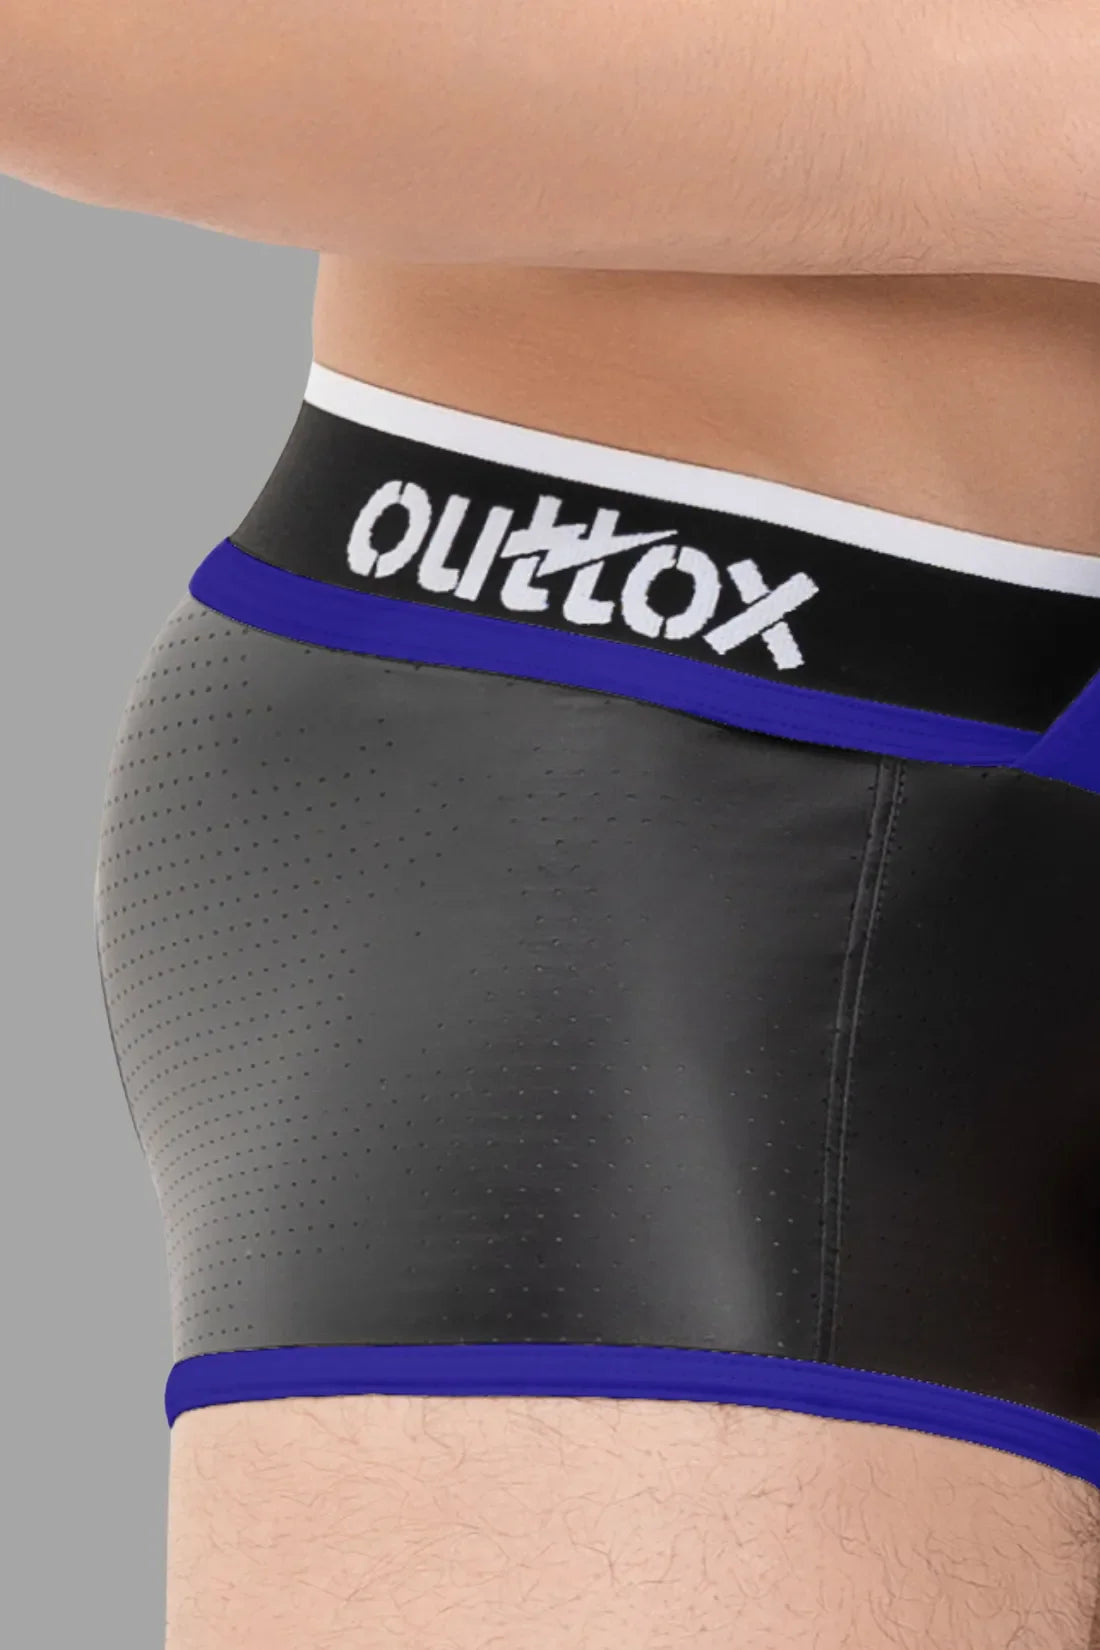 Outtox. Shorts mit offenem Rücken und Druckknopf-Schamkapsel. Schwarz und Blau „Royal“